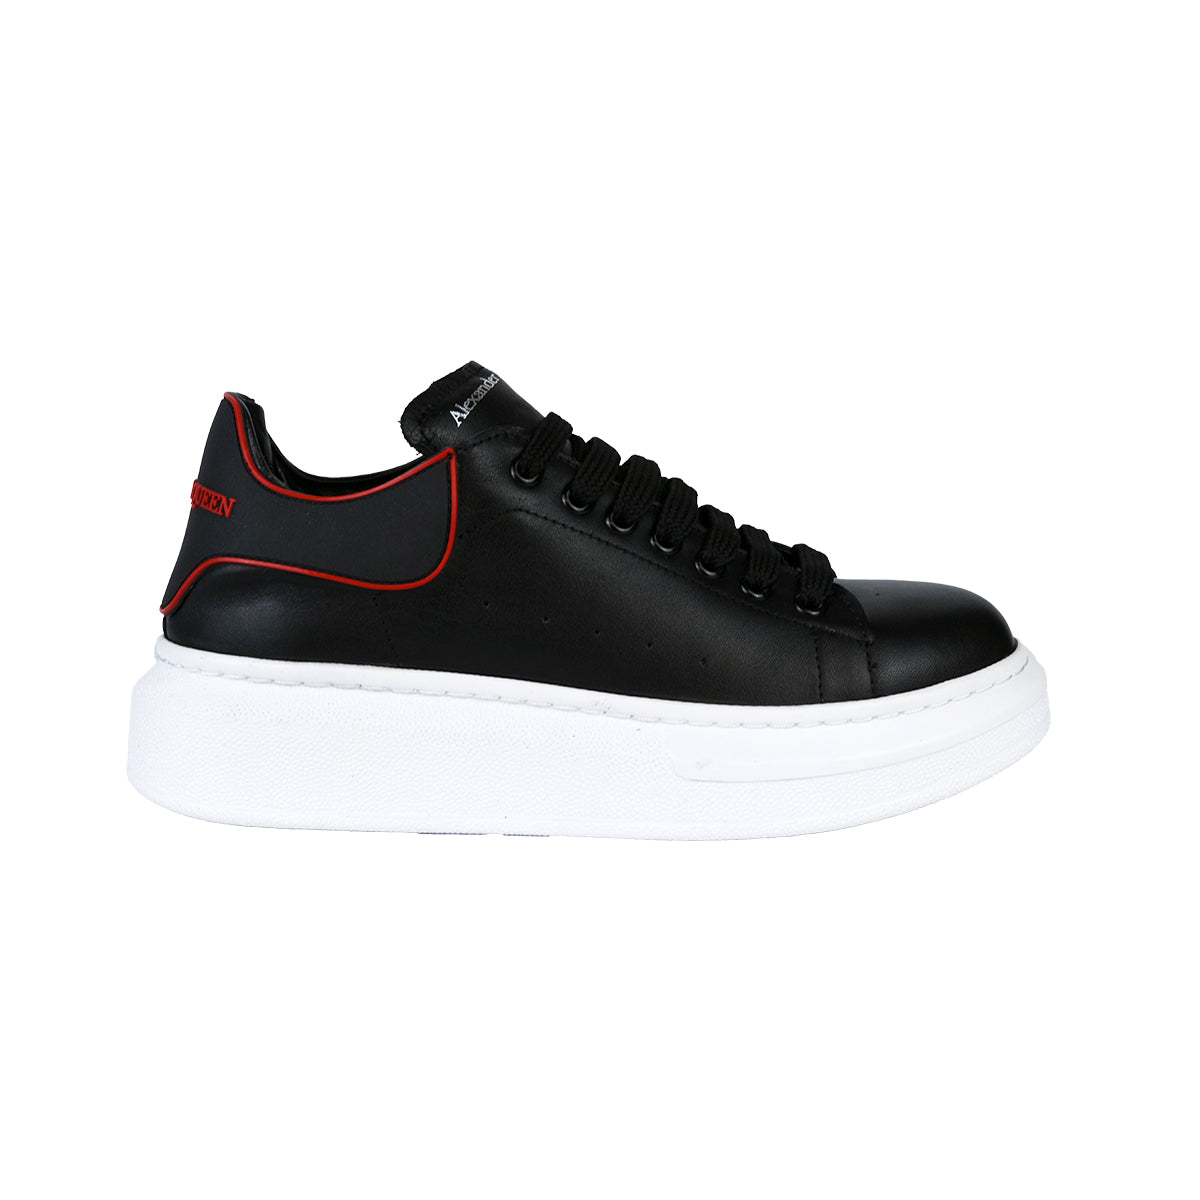 Alexander McQueen Kadın Bağcıklı Hakiki Deri Siyah Beyaz Sneaker Ayakkabı